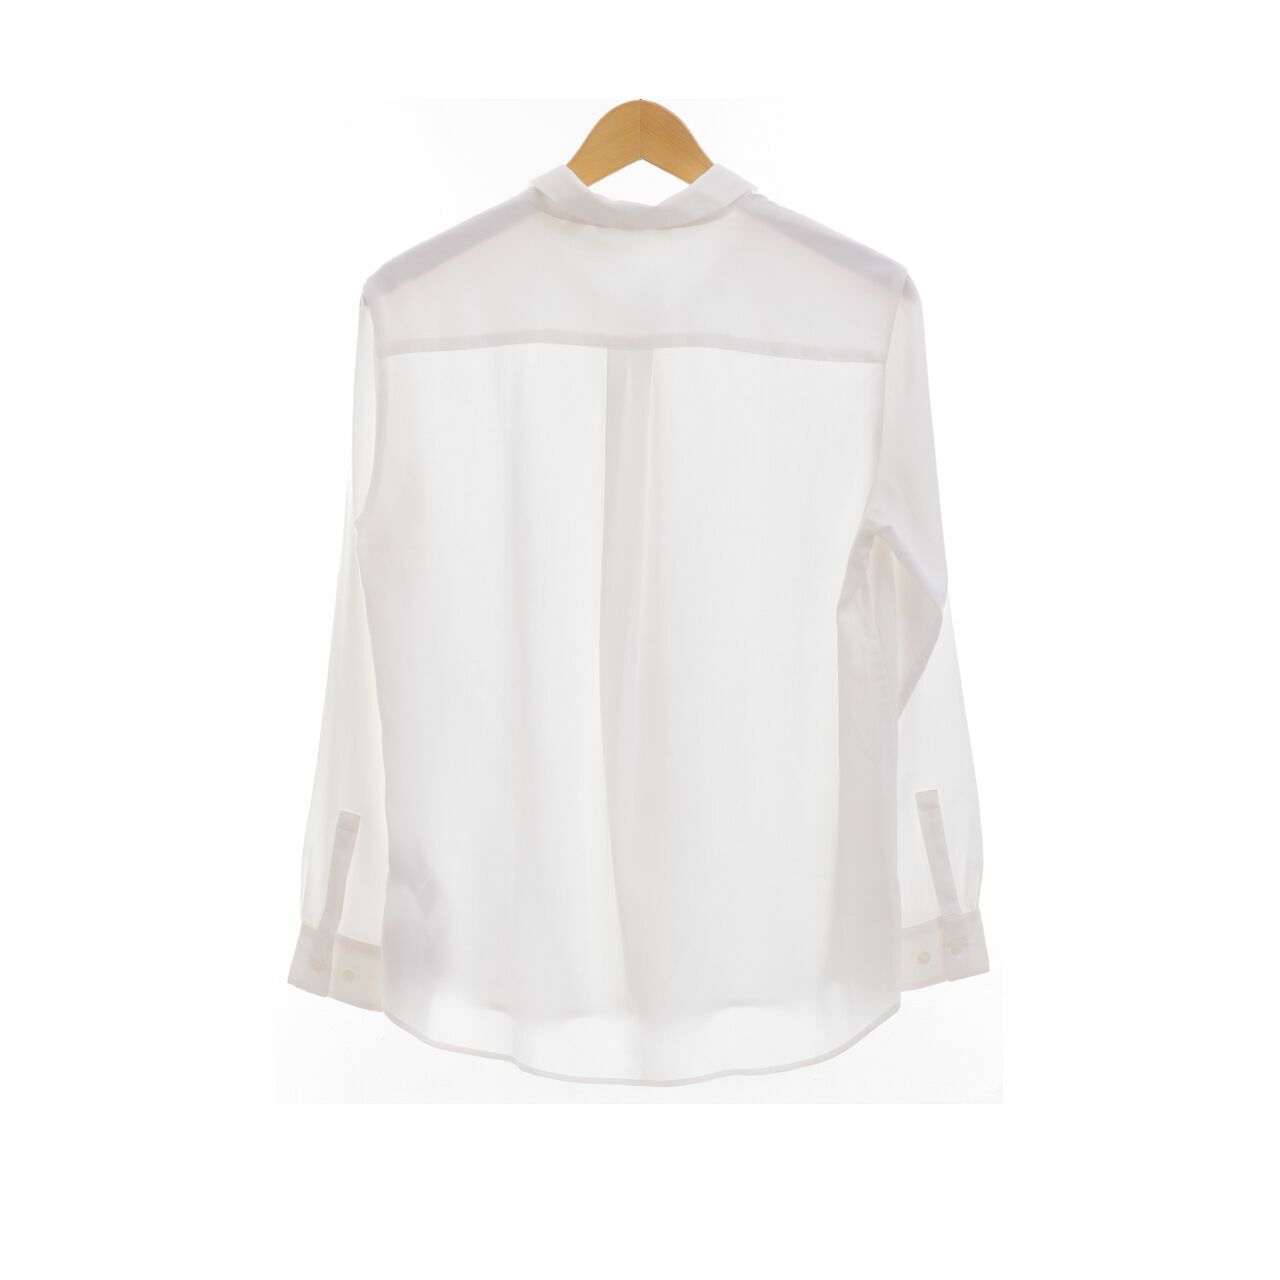 UNIQLO White Long Sleeve Shirt